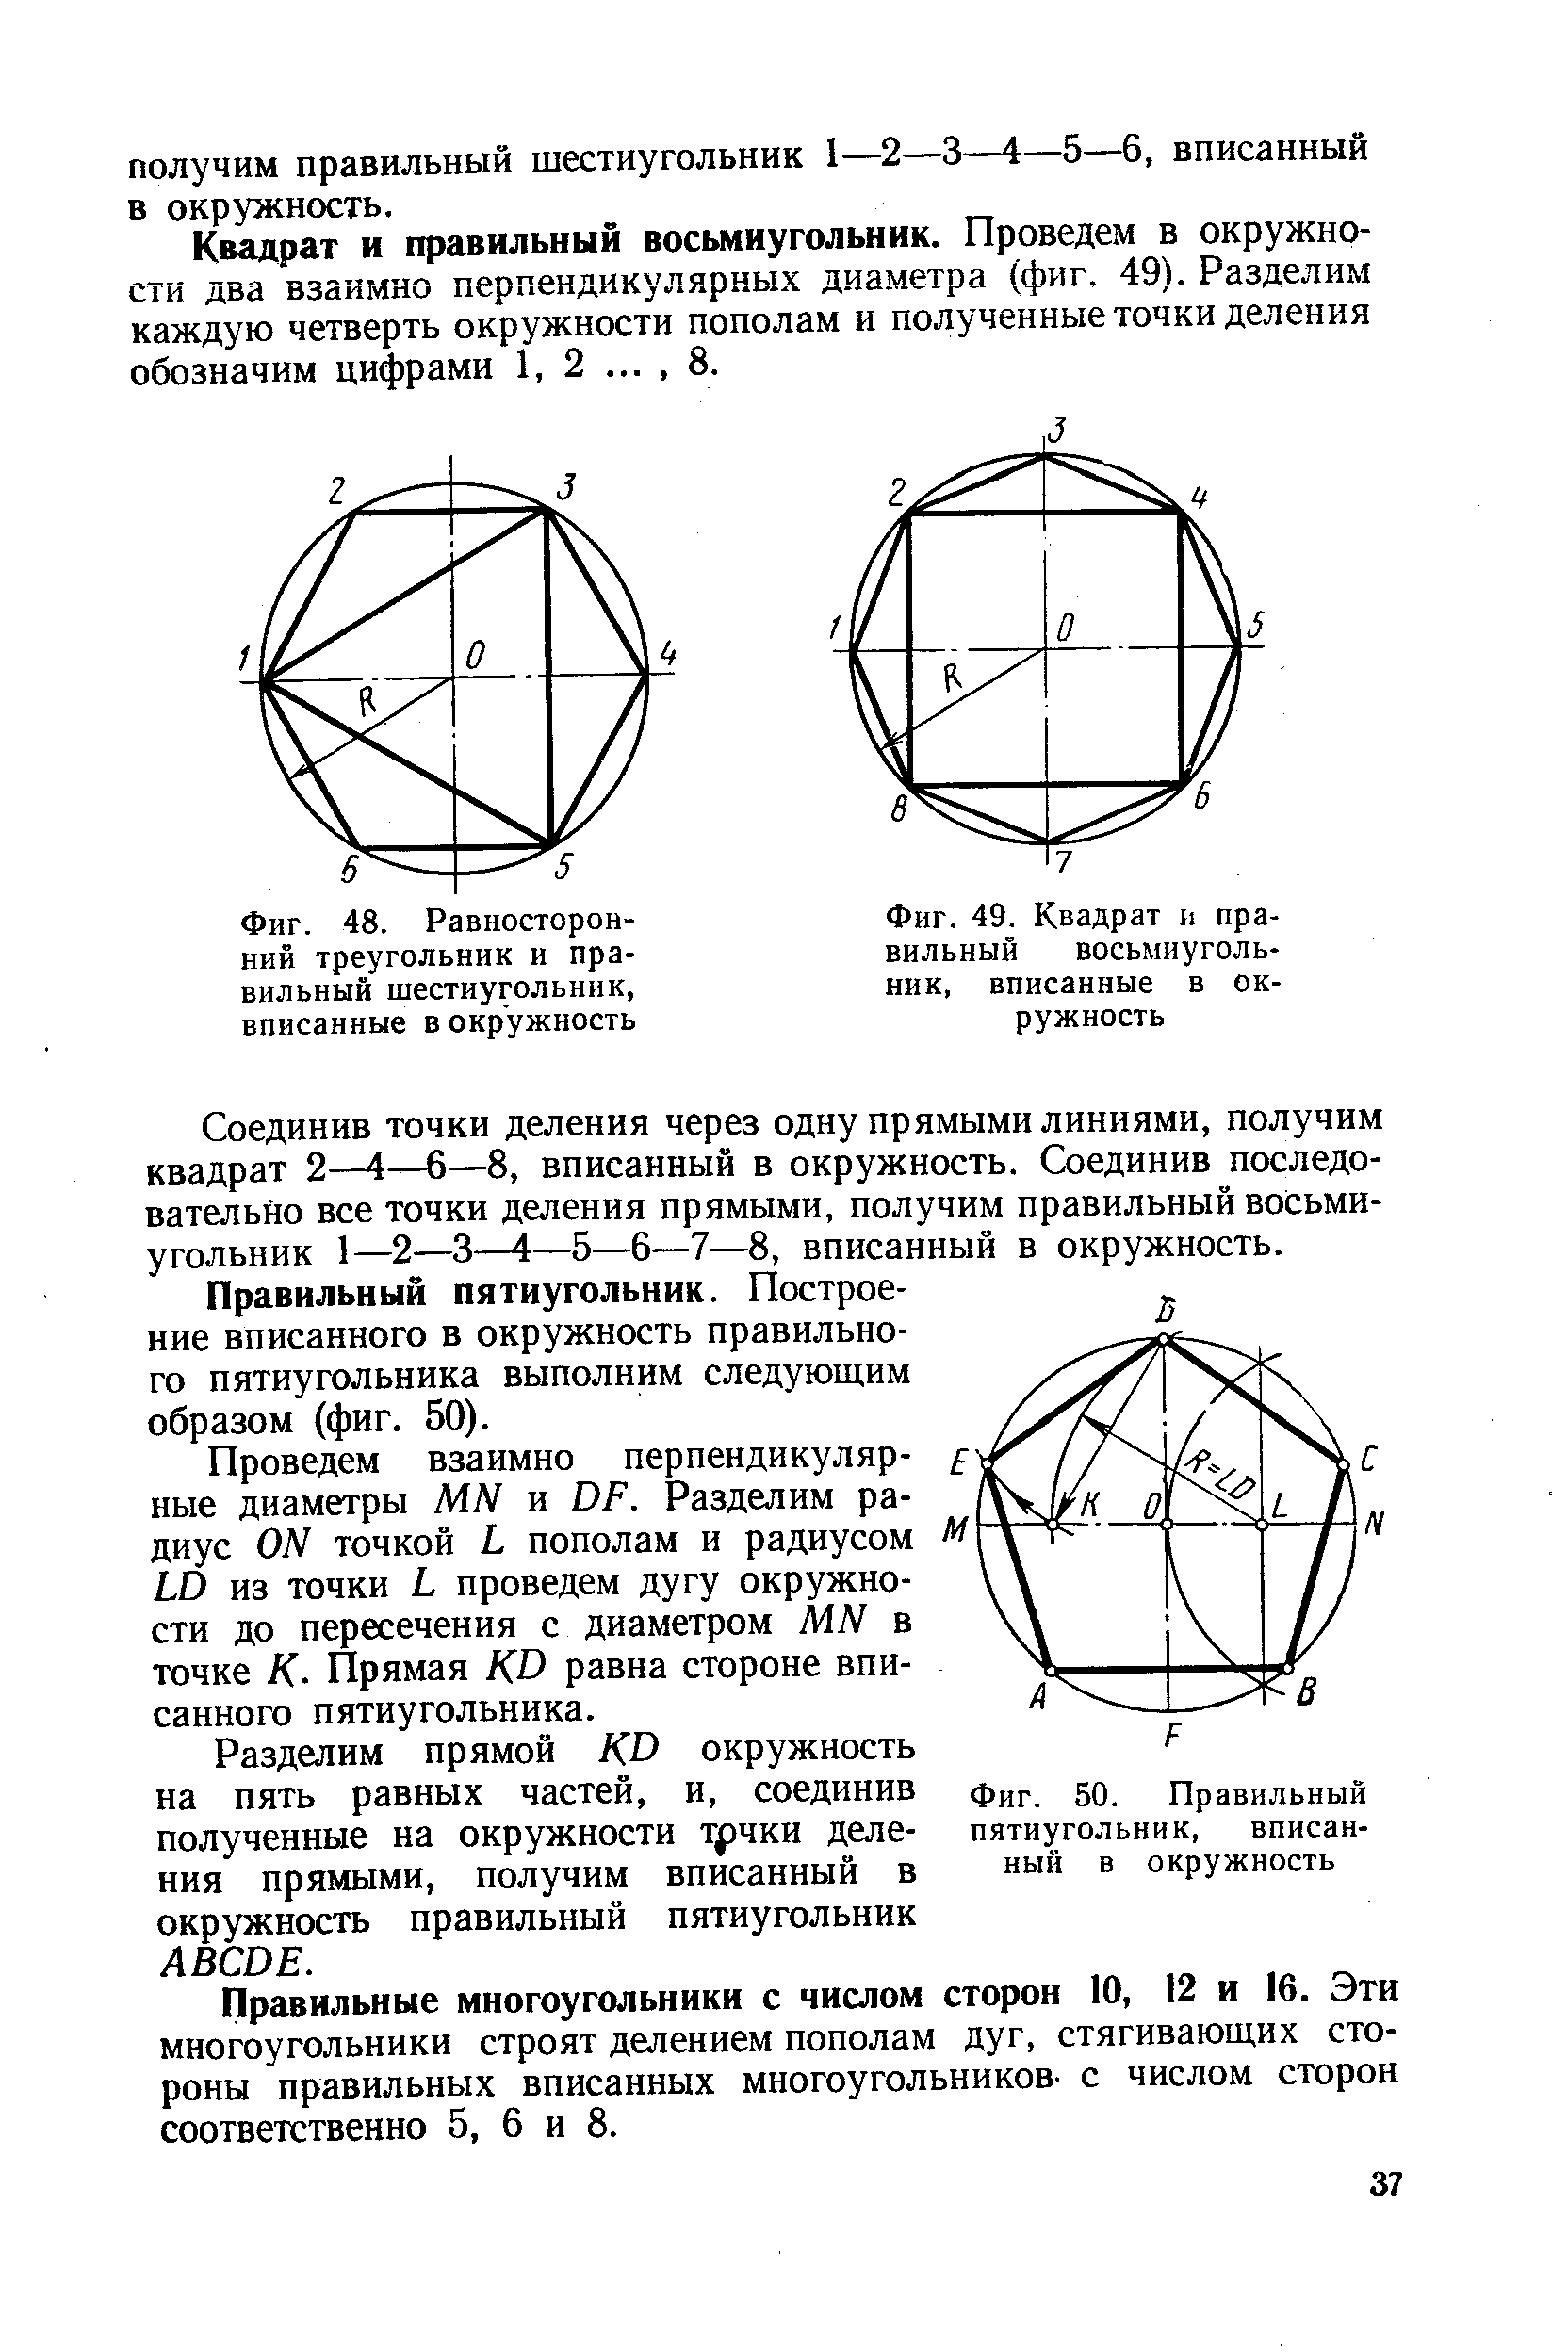 Фиг. 49. Квадрат и правильный восьмиугольник, вписанные в окружность
